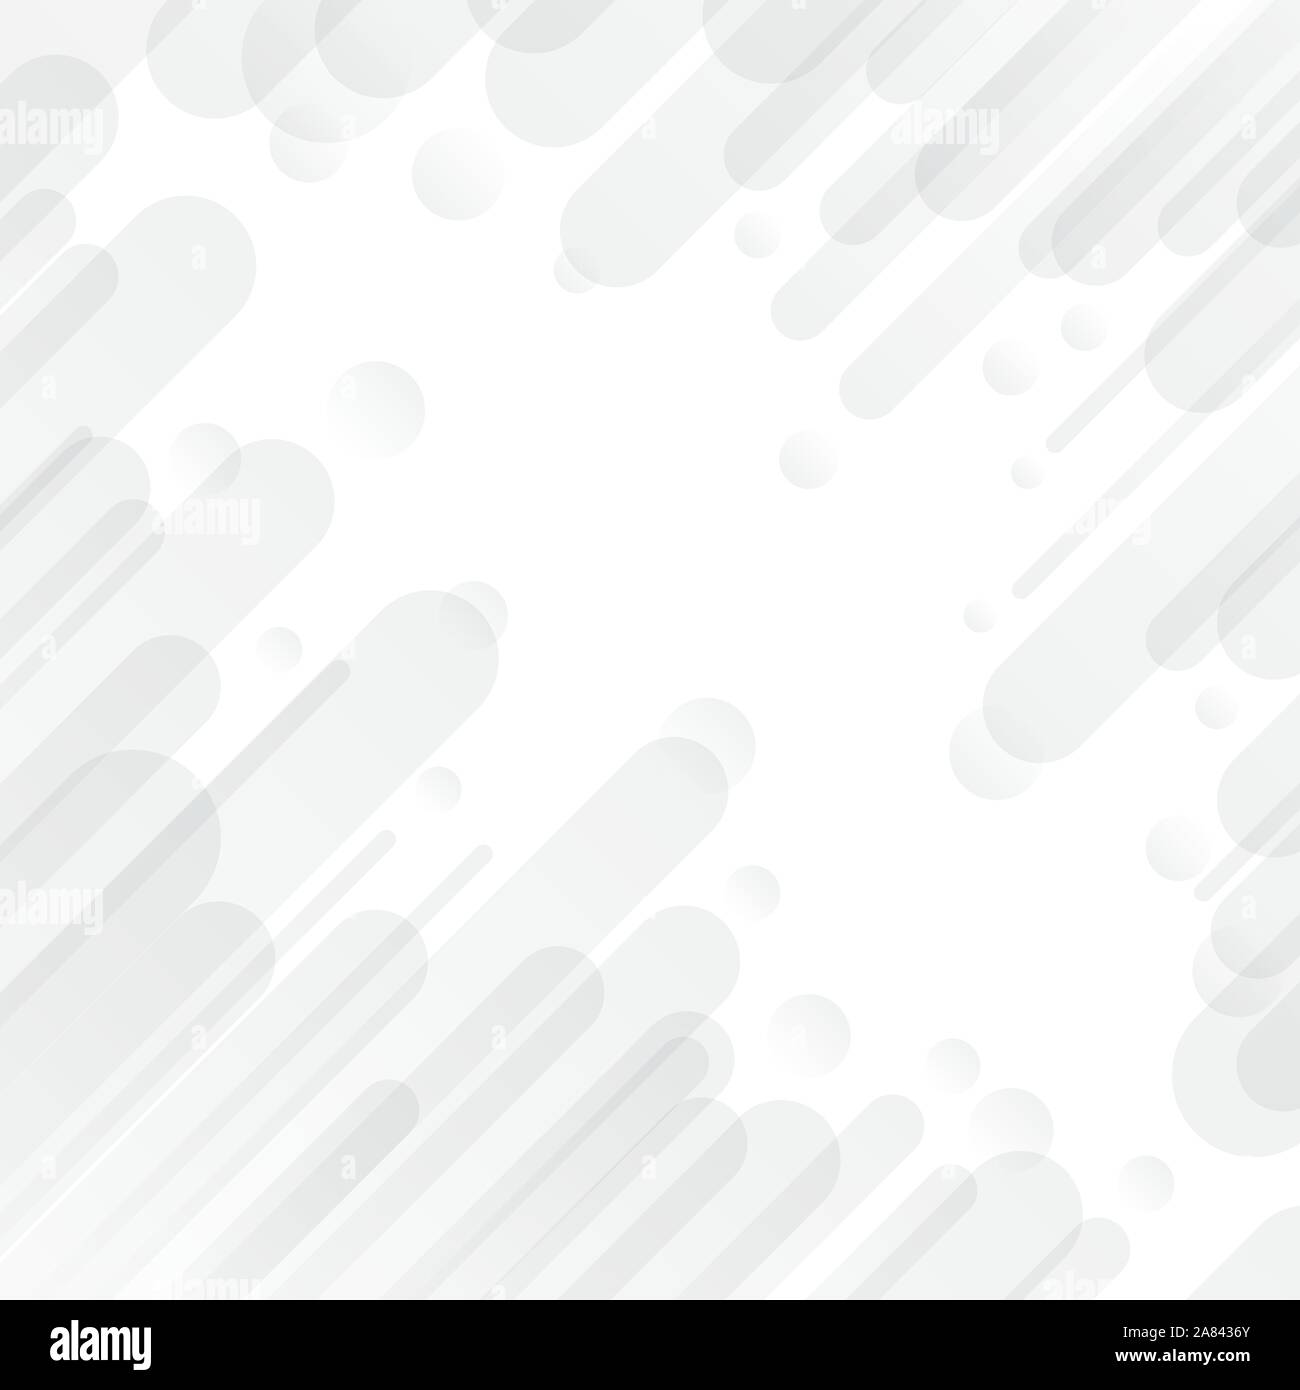 Résumé arrondi géométrique dynamique diagonal gris sur fond blanc qui se chevauchent. Motion design minimal. Vector illustration Illustration de Vecteur